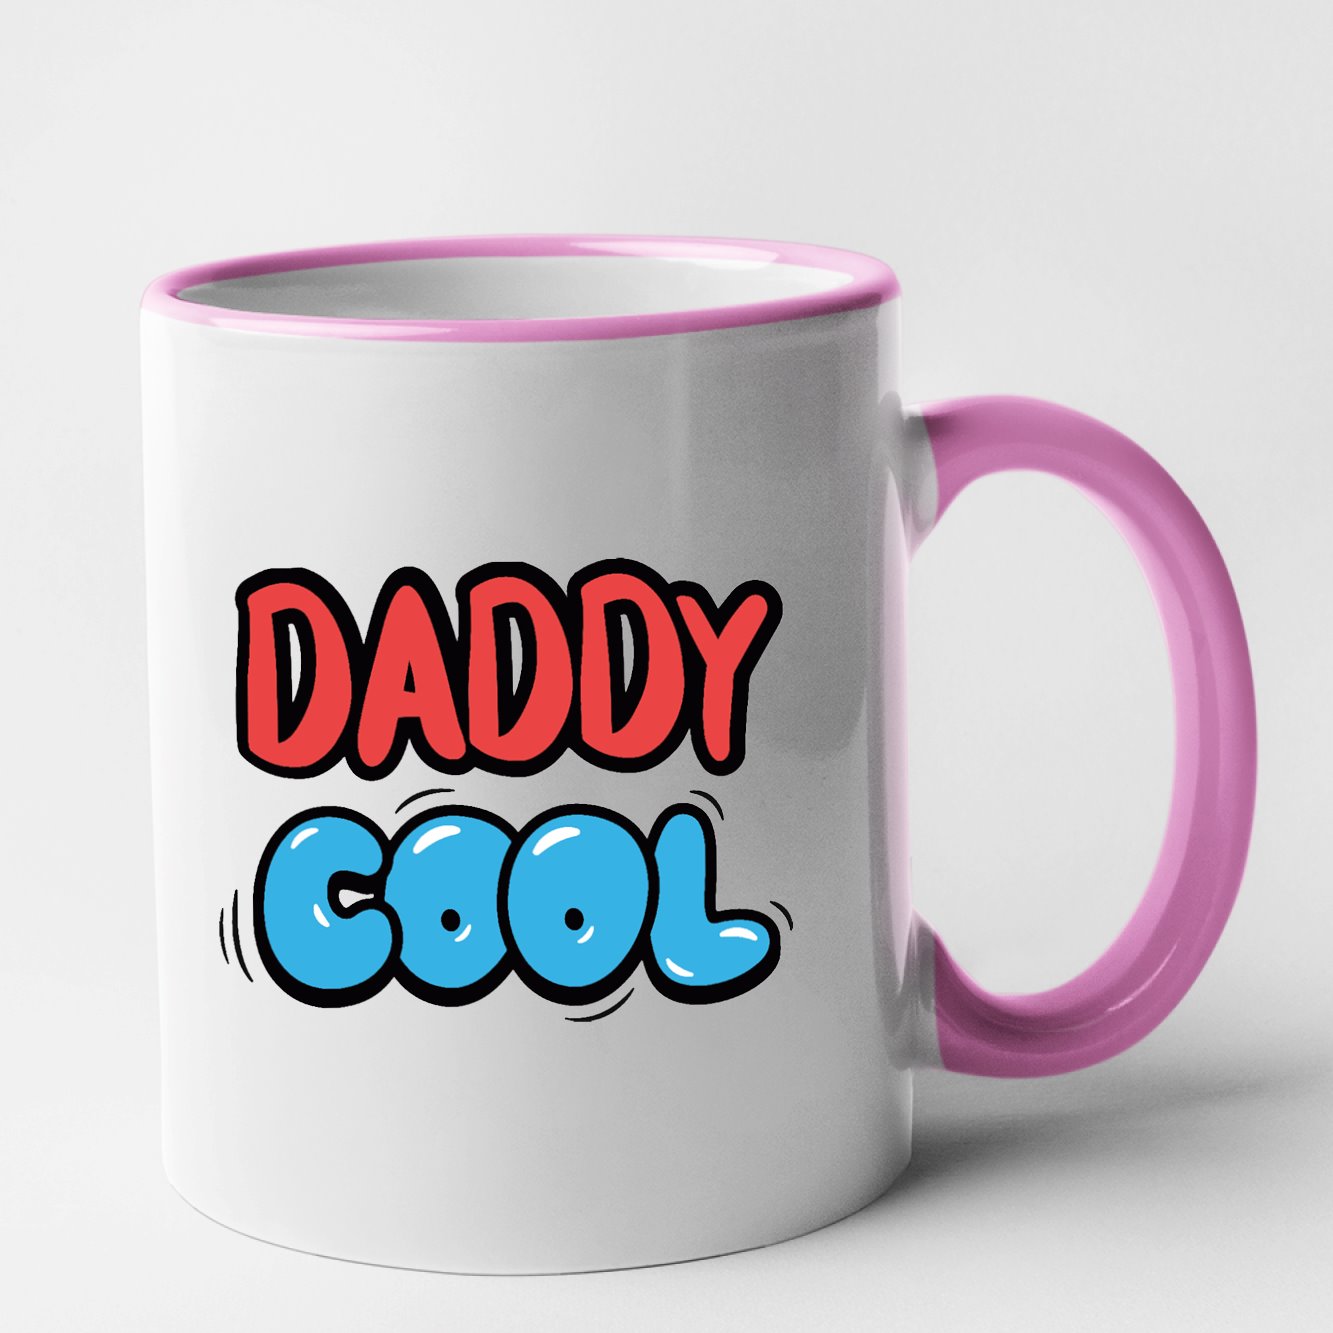 Mug Daddy Cool Rose